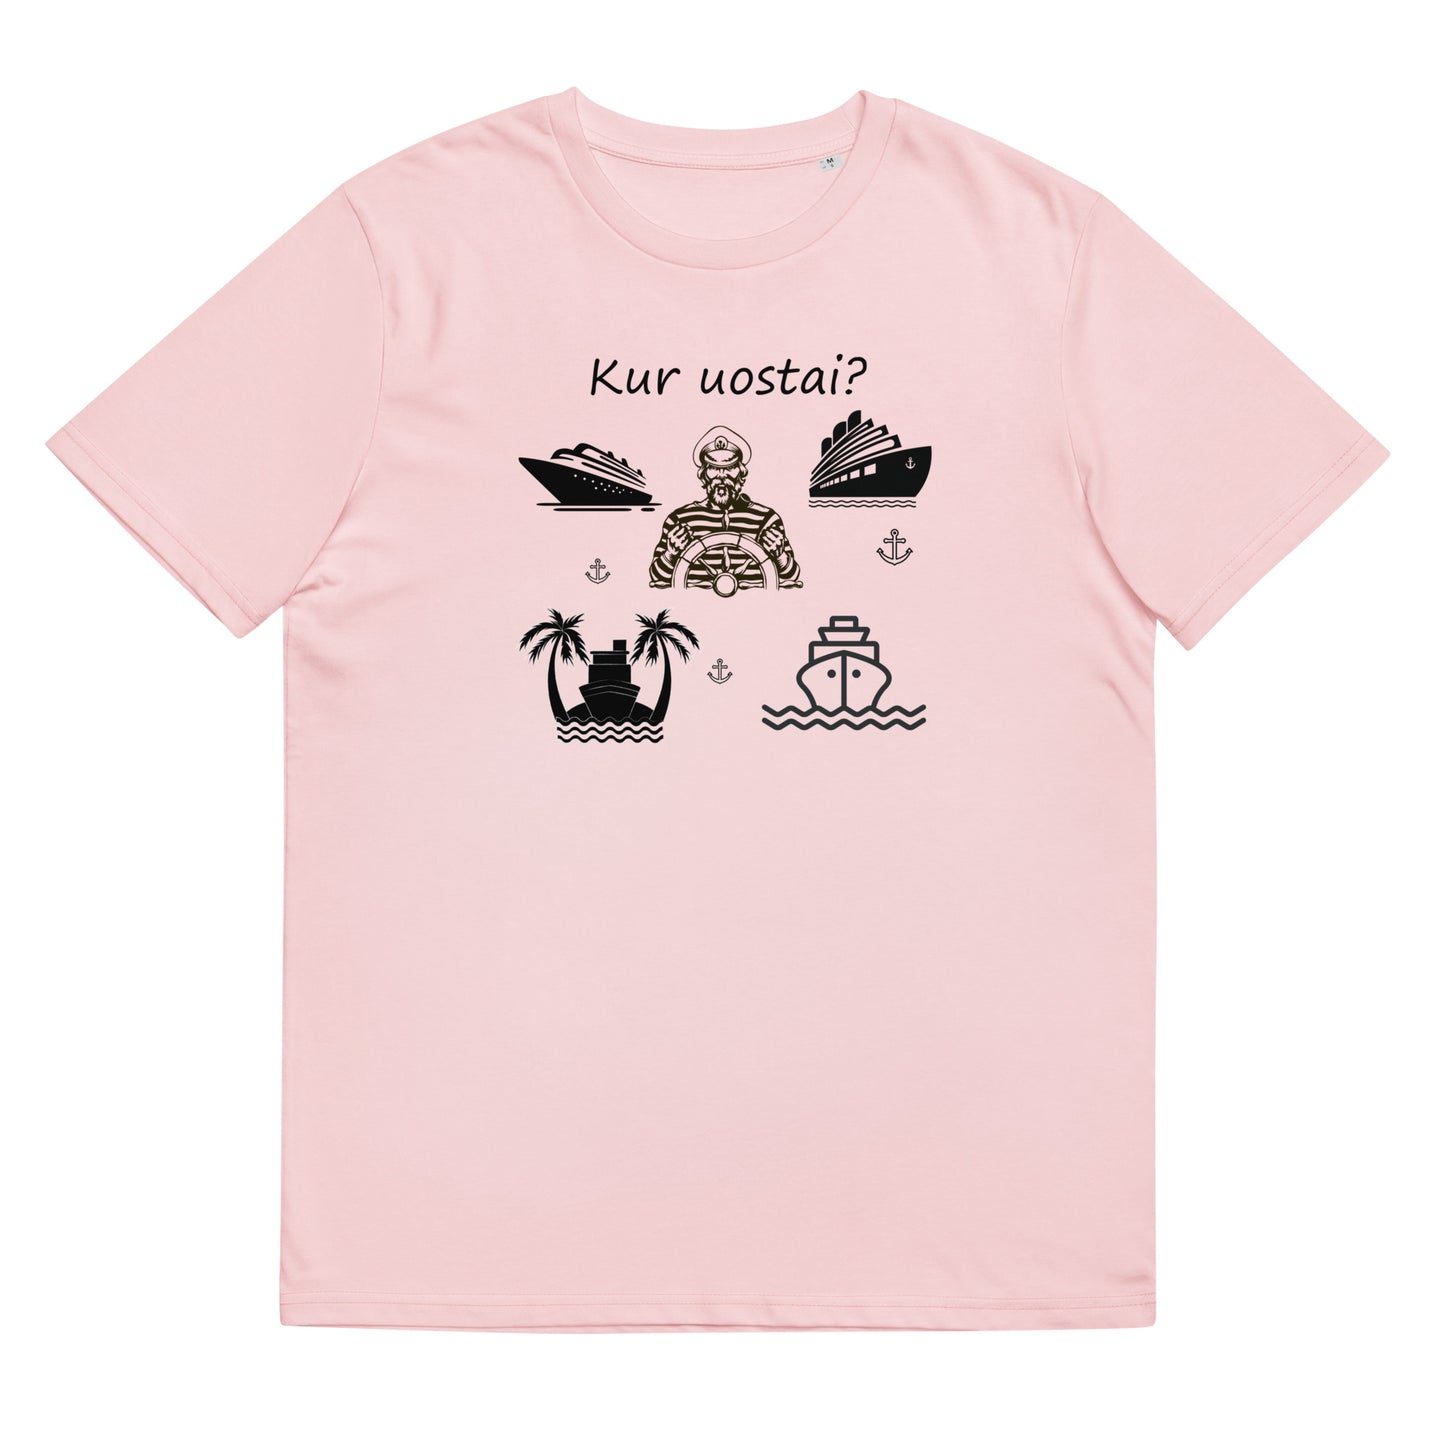 Organic cotton unisex t-shirt: "Where do you go?"